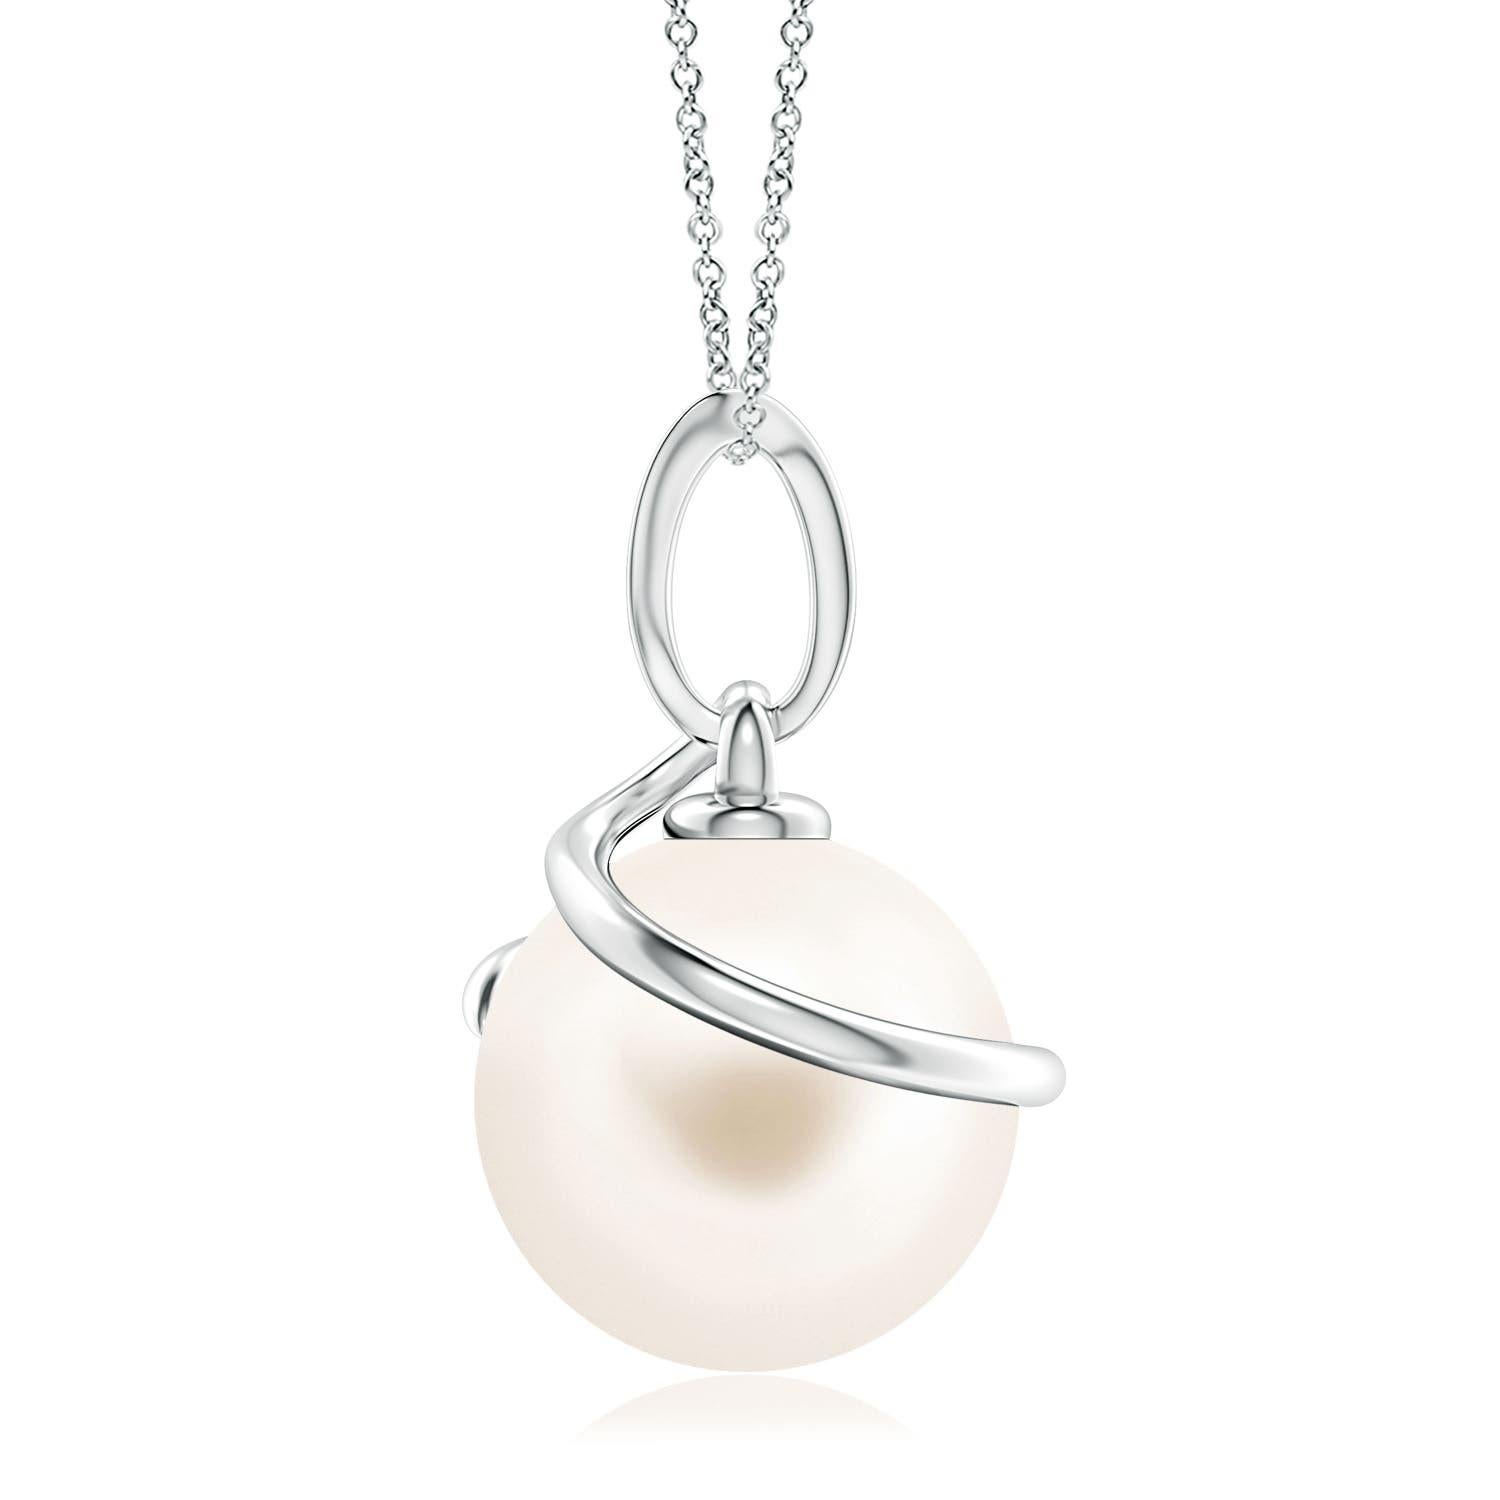 Donnez une touche d'élégance à vos looks avec ce pendentif en perles de culture d'eau douce, réalisé en or blanc 14k. La magnifique perle est entourée d'une boucle métallique en spirale et reliée à une balle sertie de diamants.
La perle de culture